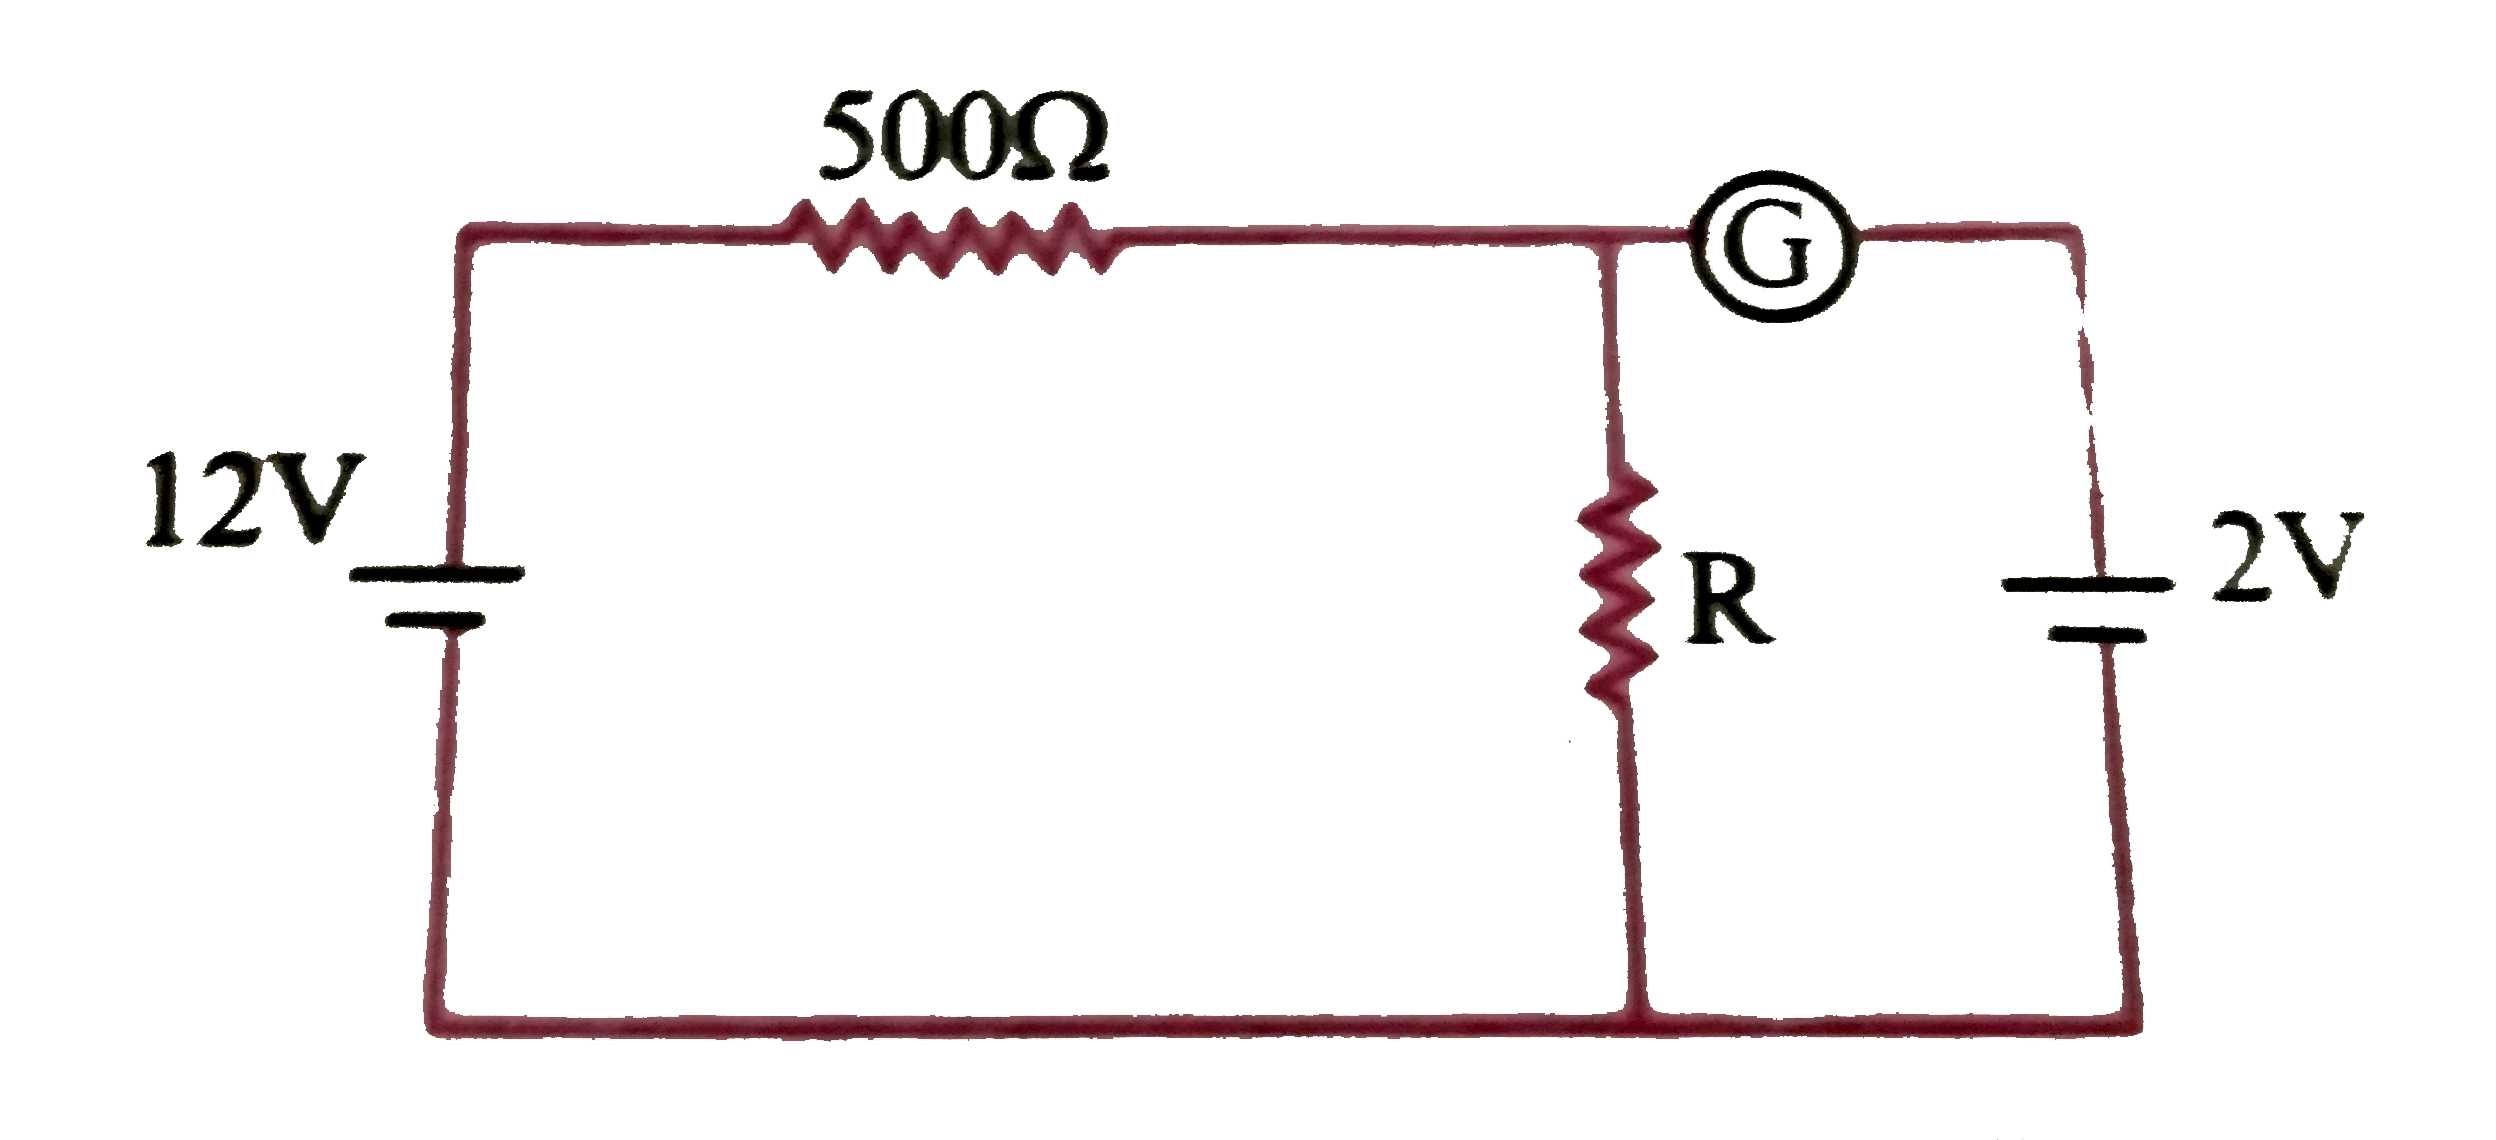 दिए गये परिपथ  में धारामापी G  शून्य विक्षेप दर्शाता है  । यदि बैटरियों   A तथा  B   के आंतरिक  प्रतिरोध  नगण्य है , तो  प्रतिरोधक R का  मान होगा -